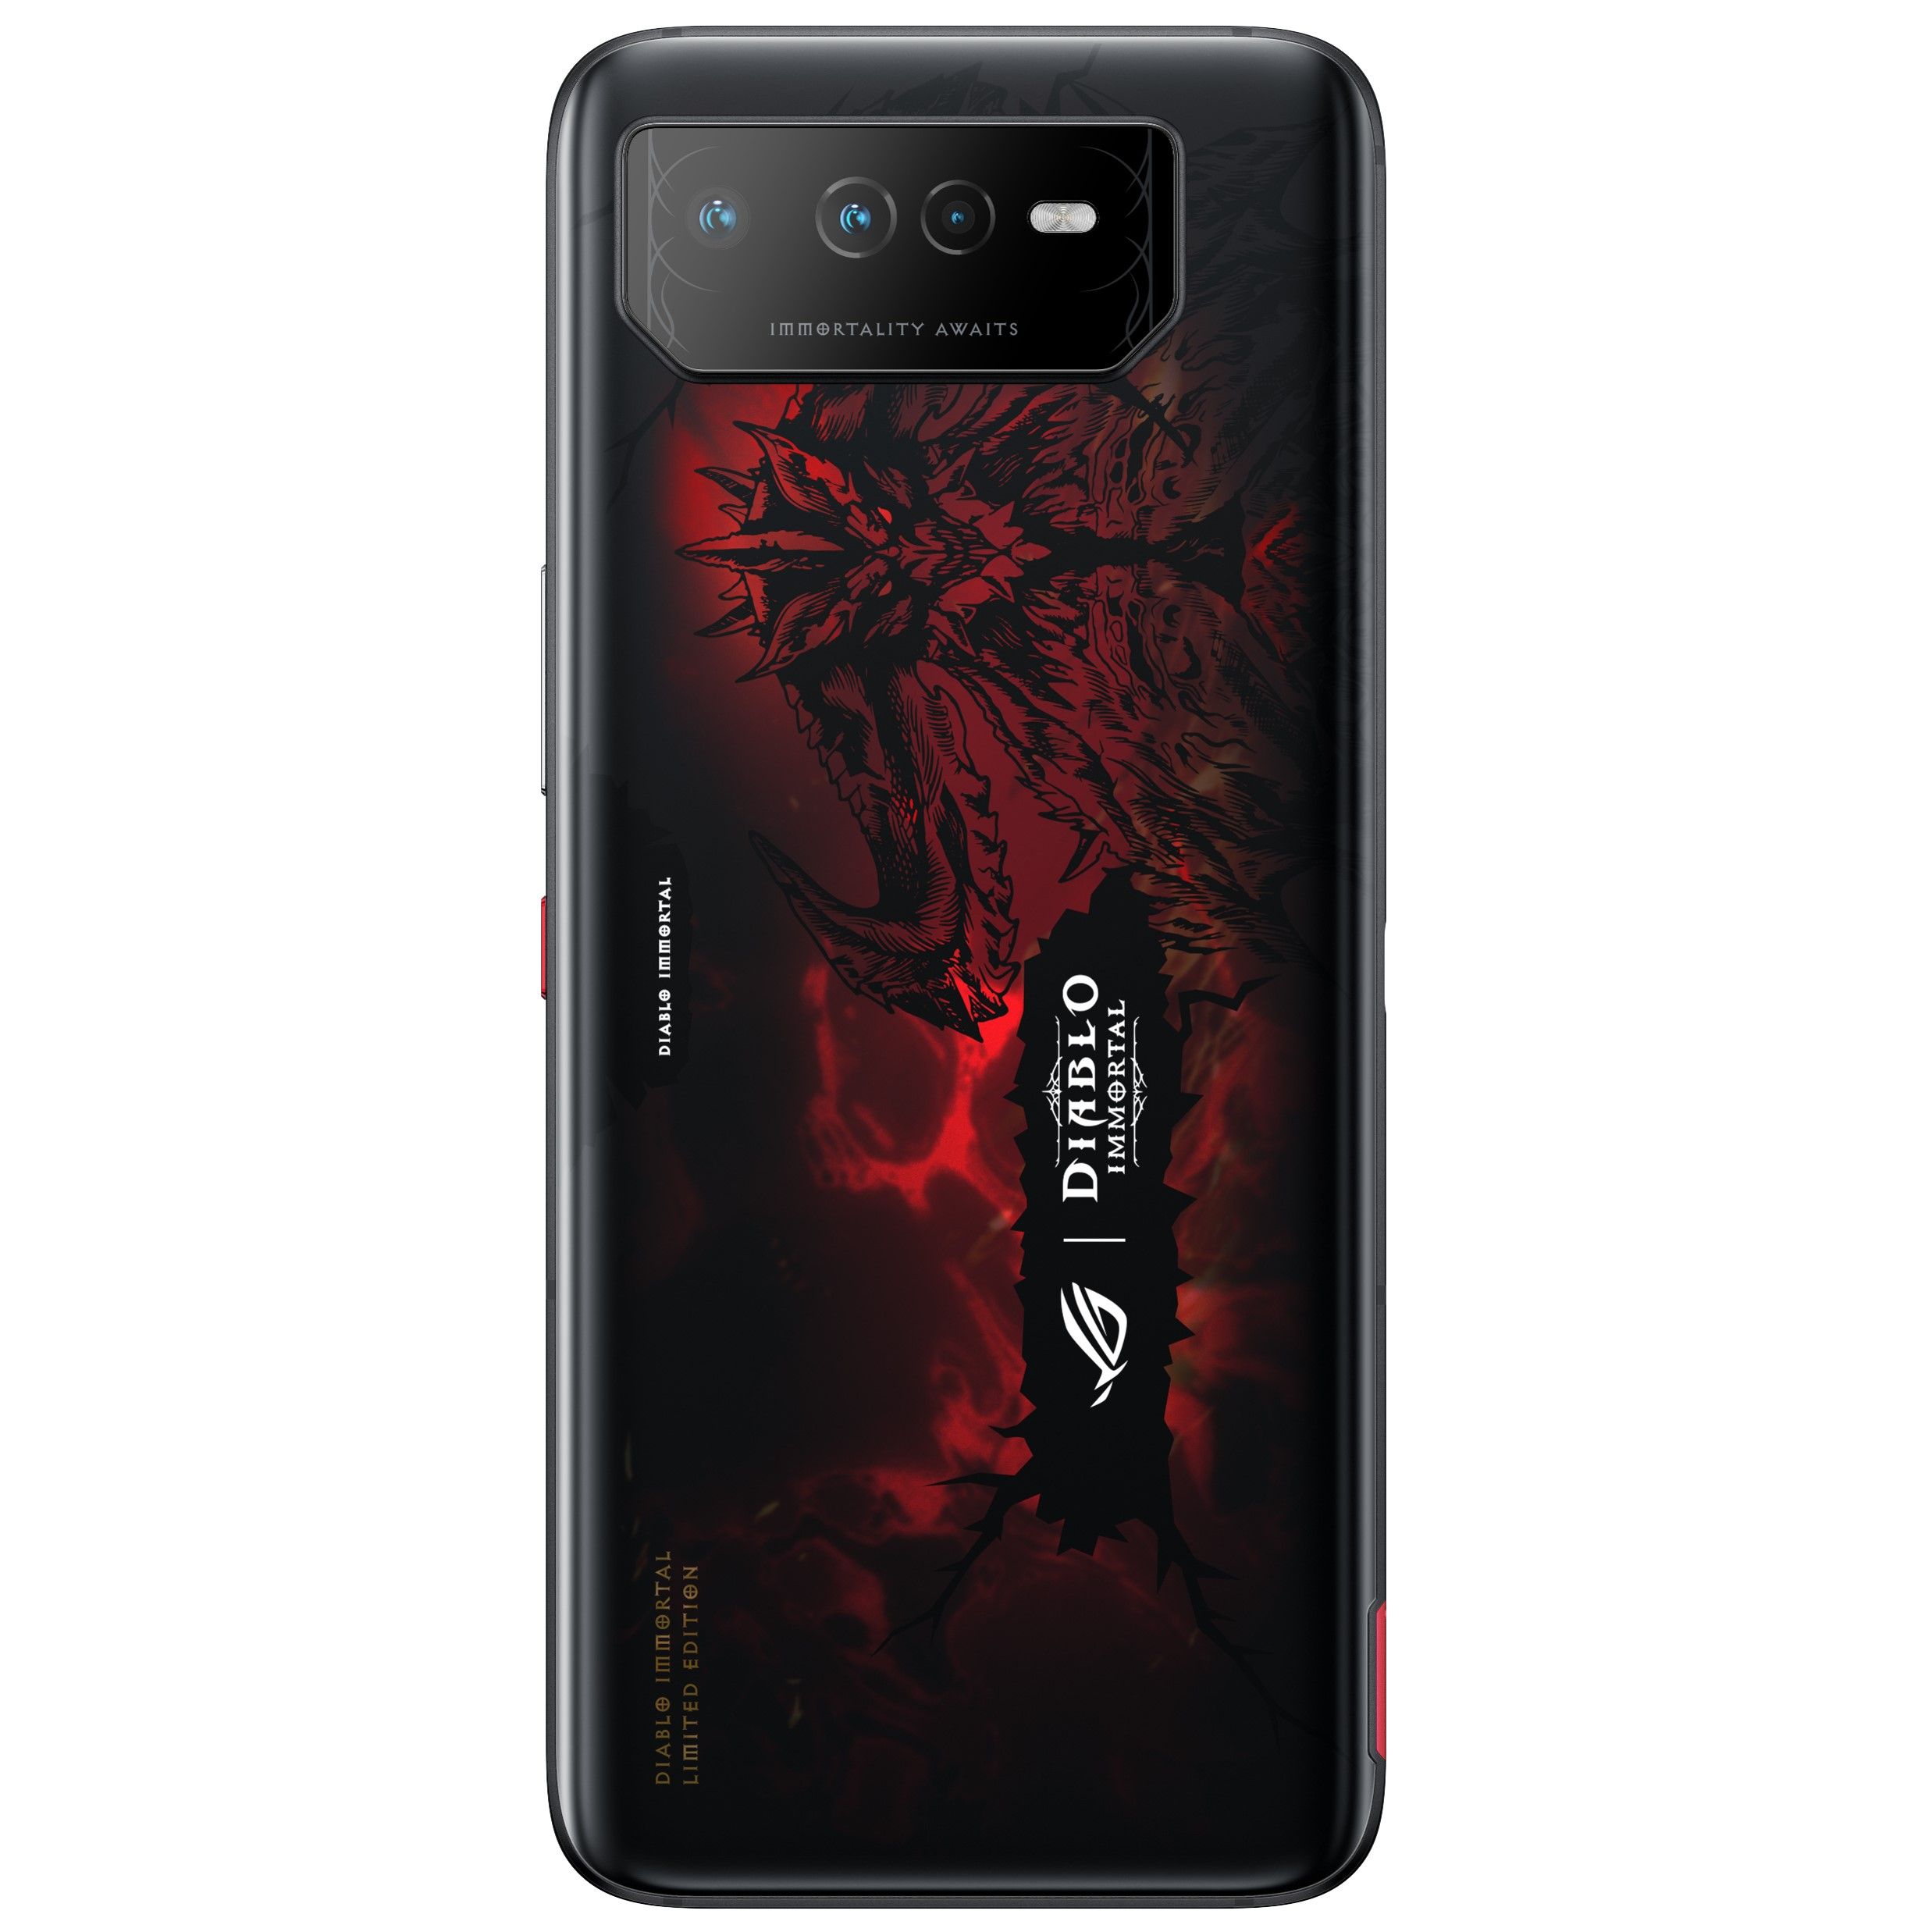 เผยโฉมมือถือเกมมิ่งรุ่นพิเศษ ASUS ROG Phone 6 Diablo Immortal Edition ราคาราว 40,800 บาท